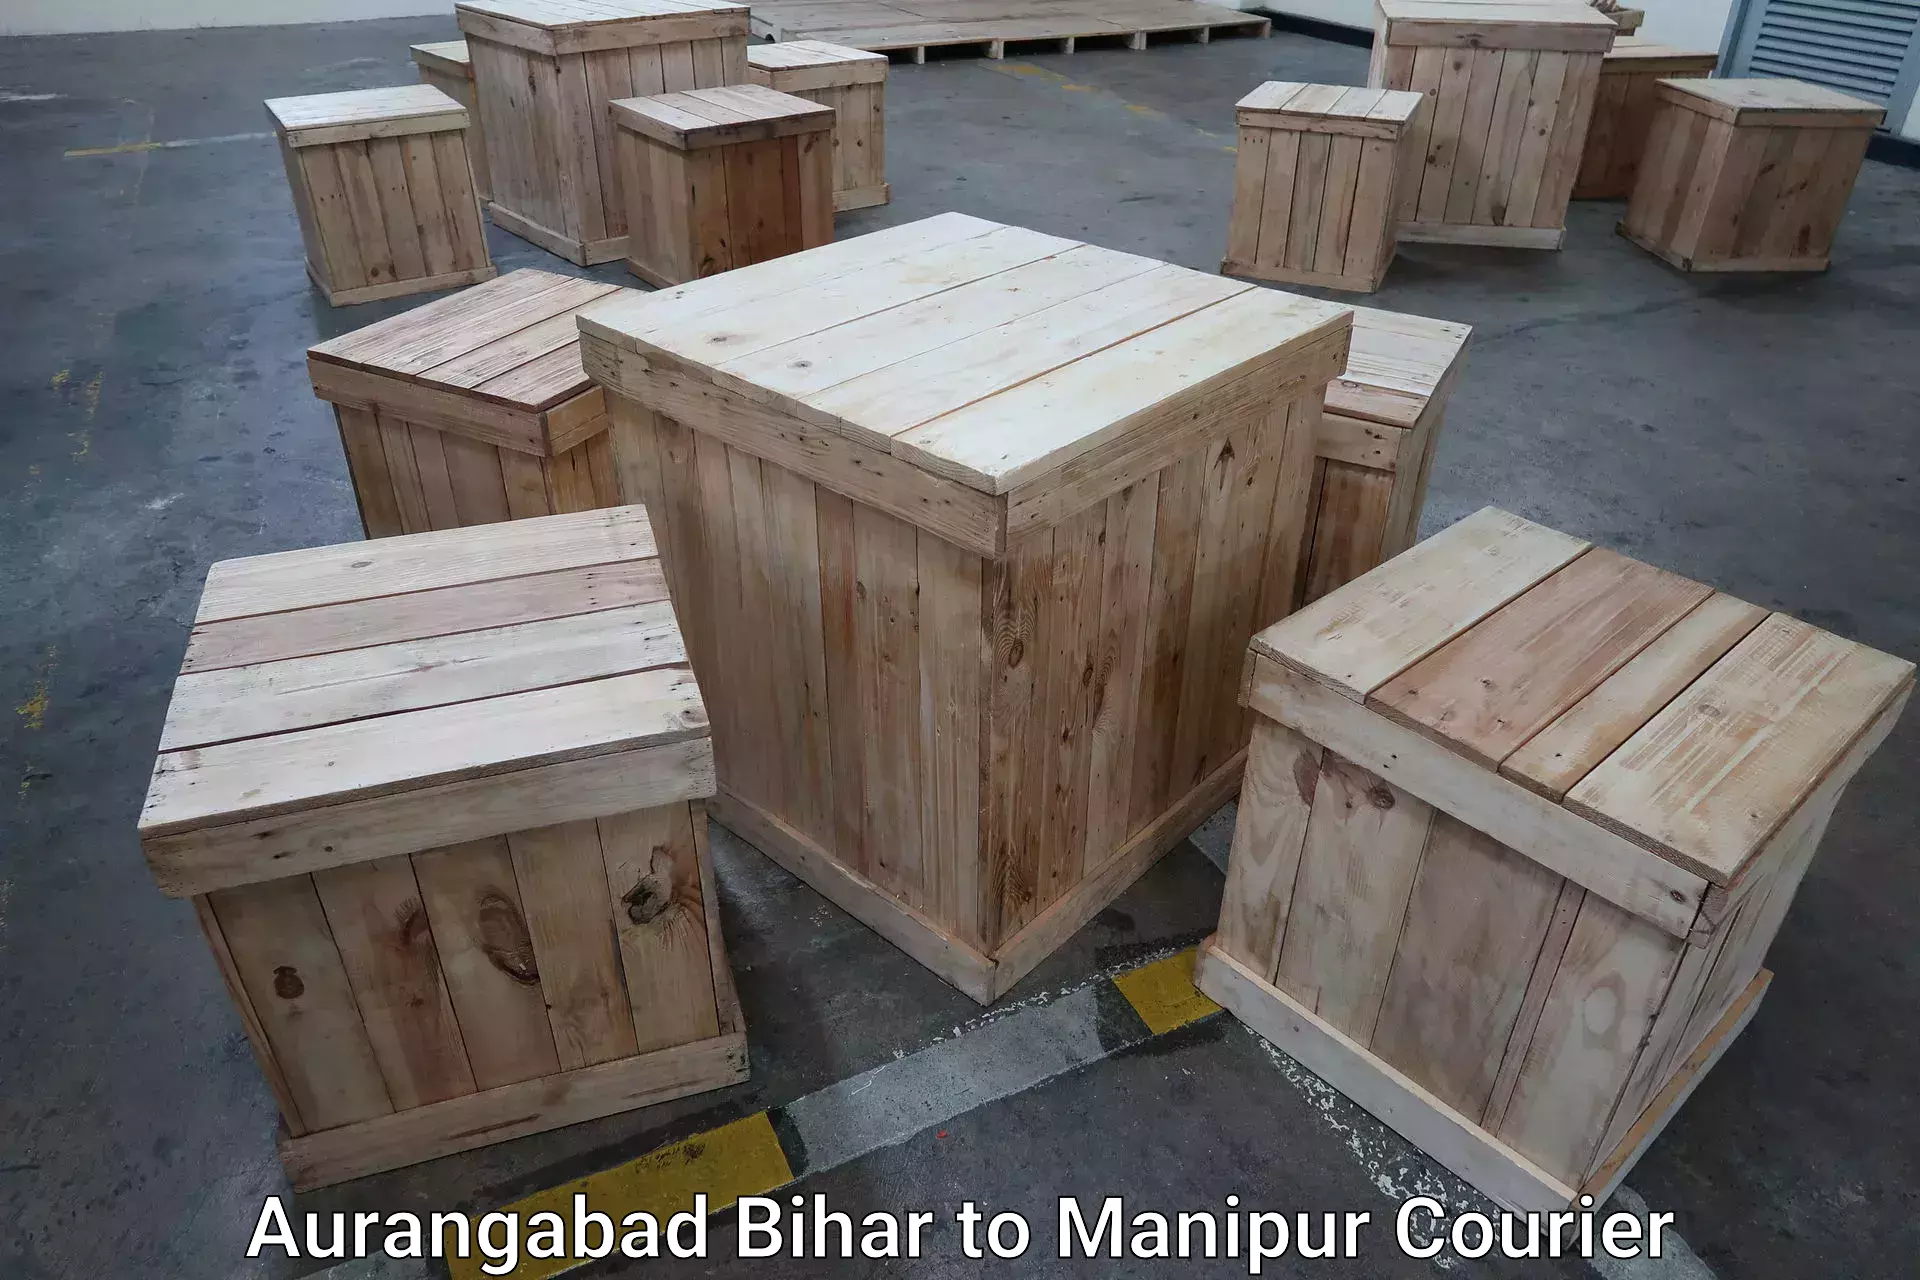 Luggage delivery estimate Aurangabad Bihar to Jiribam